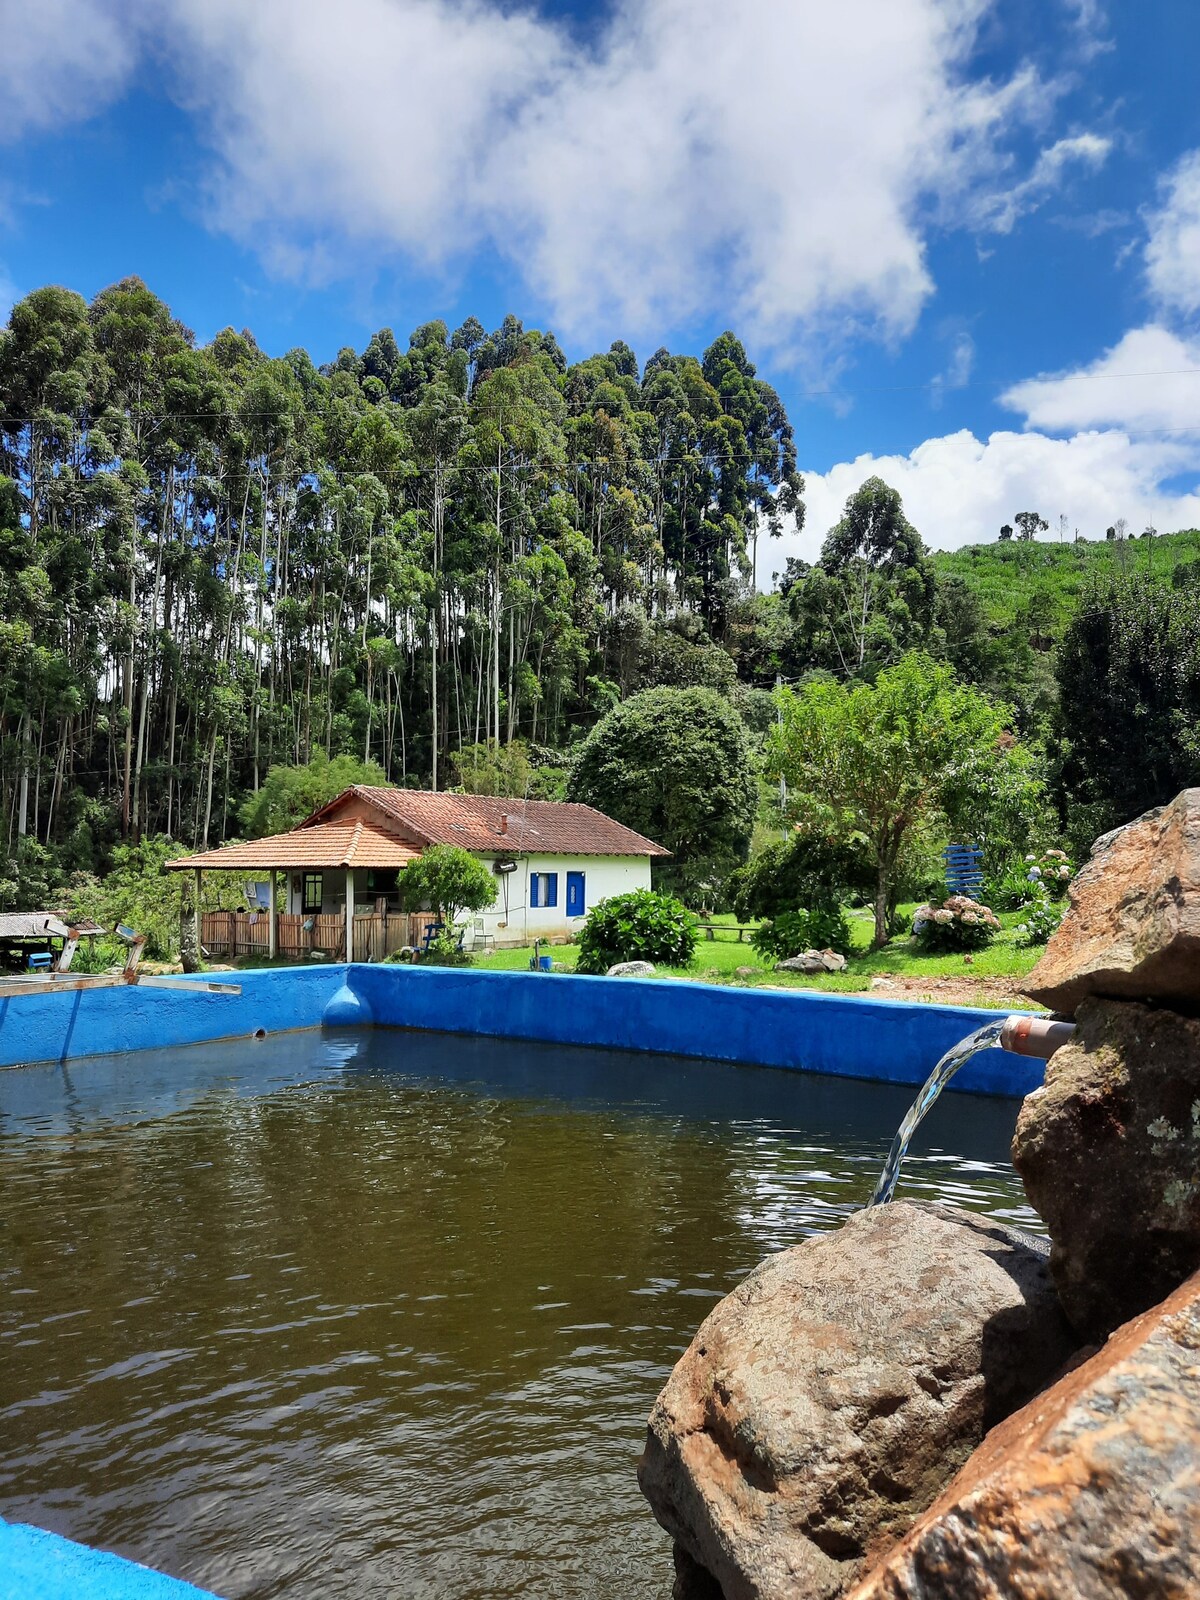 Rancho com piscina em Itamonte Mg